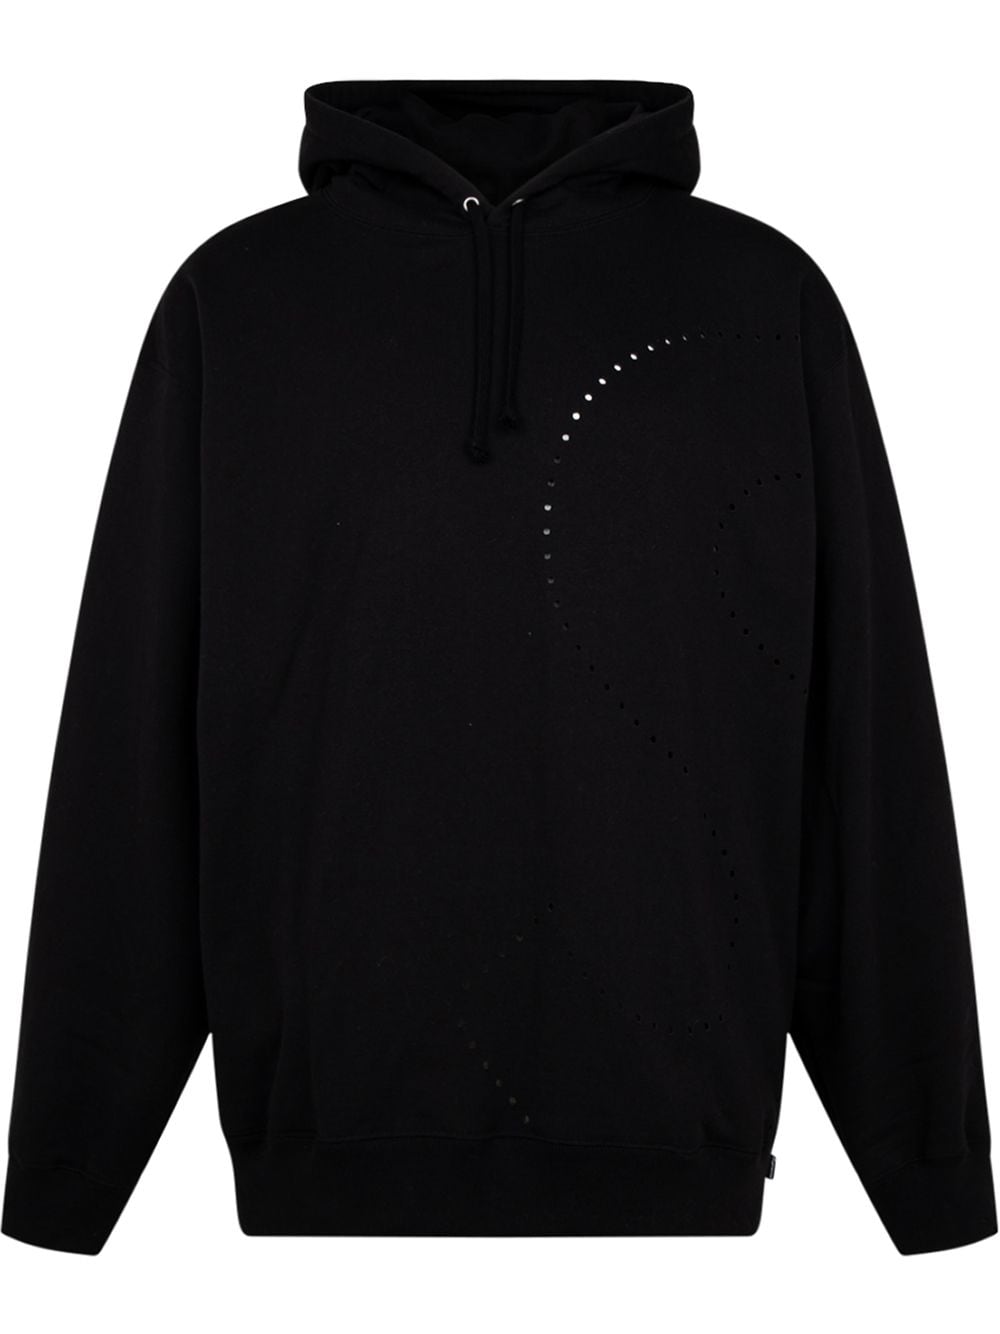 Supreme laser cut 'S' logo hoodie - Black von Supreme